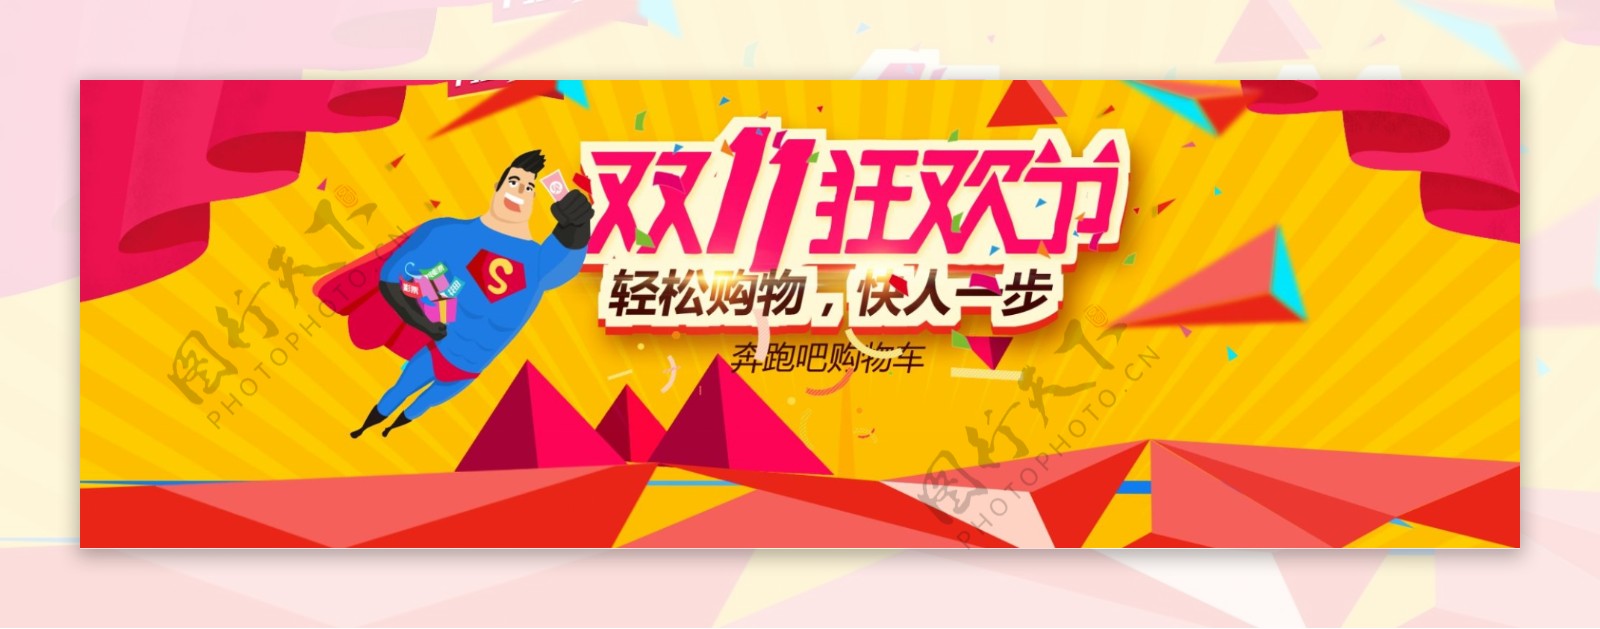 淘宝天猫双11购物全球狂欢节促销海报